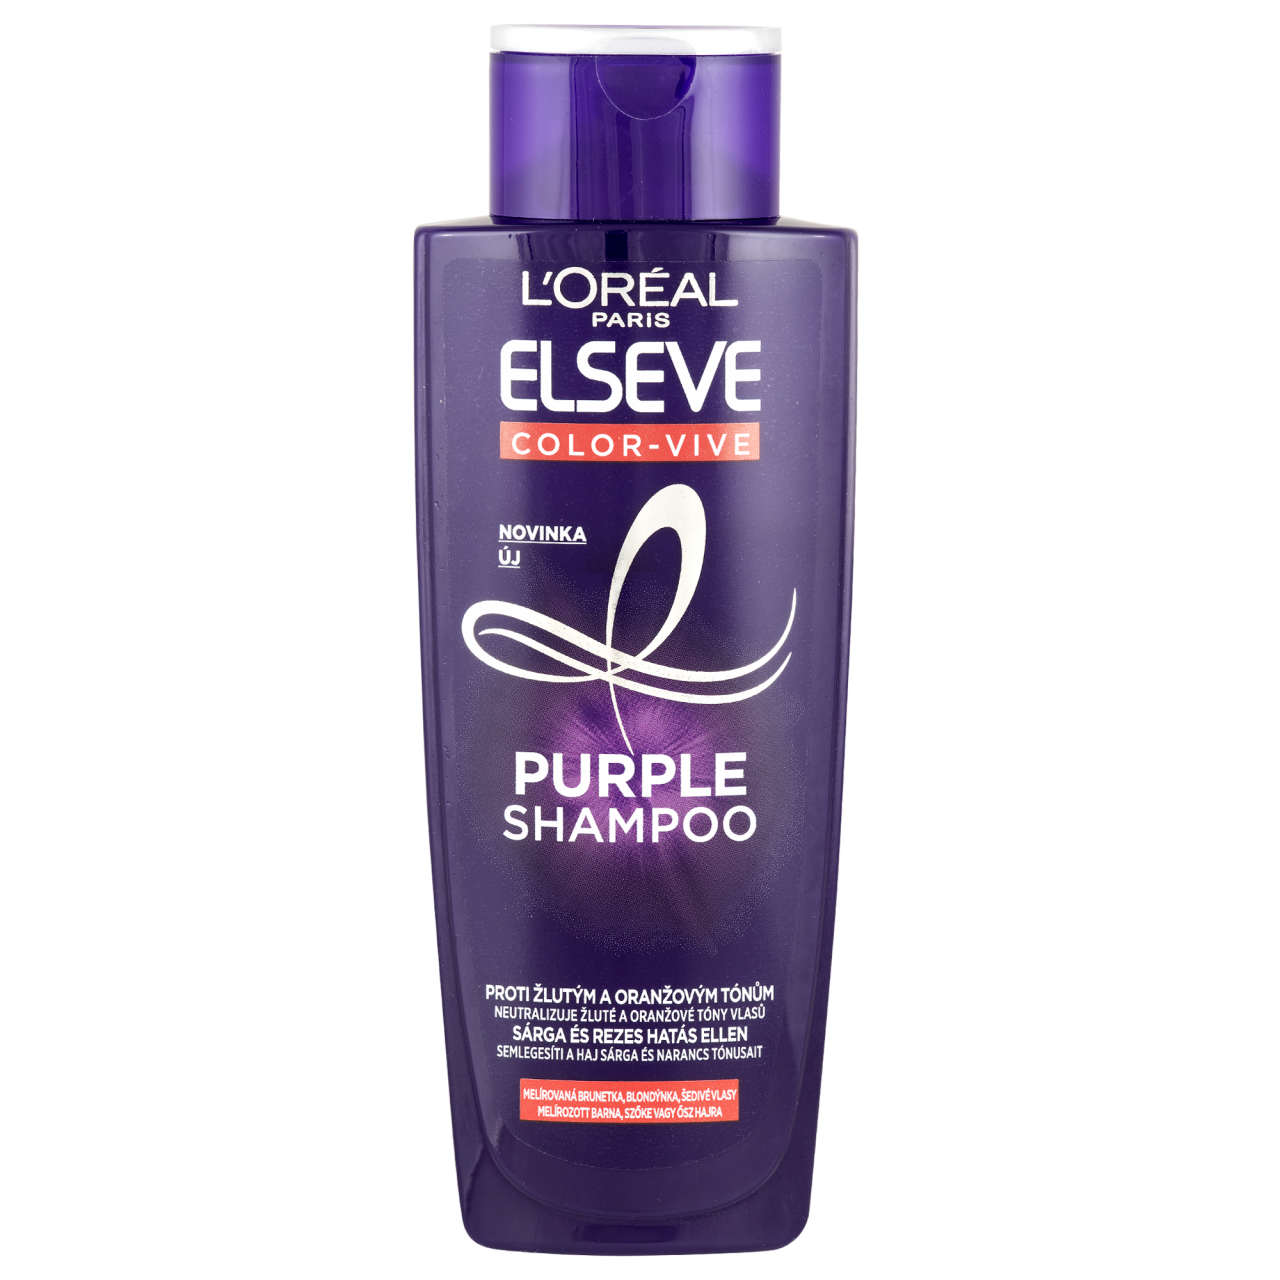 L'Oréal Paris Elséve Color-Vive Purple Sampon